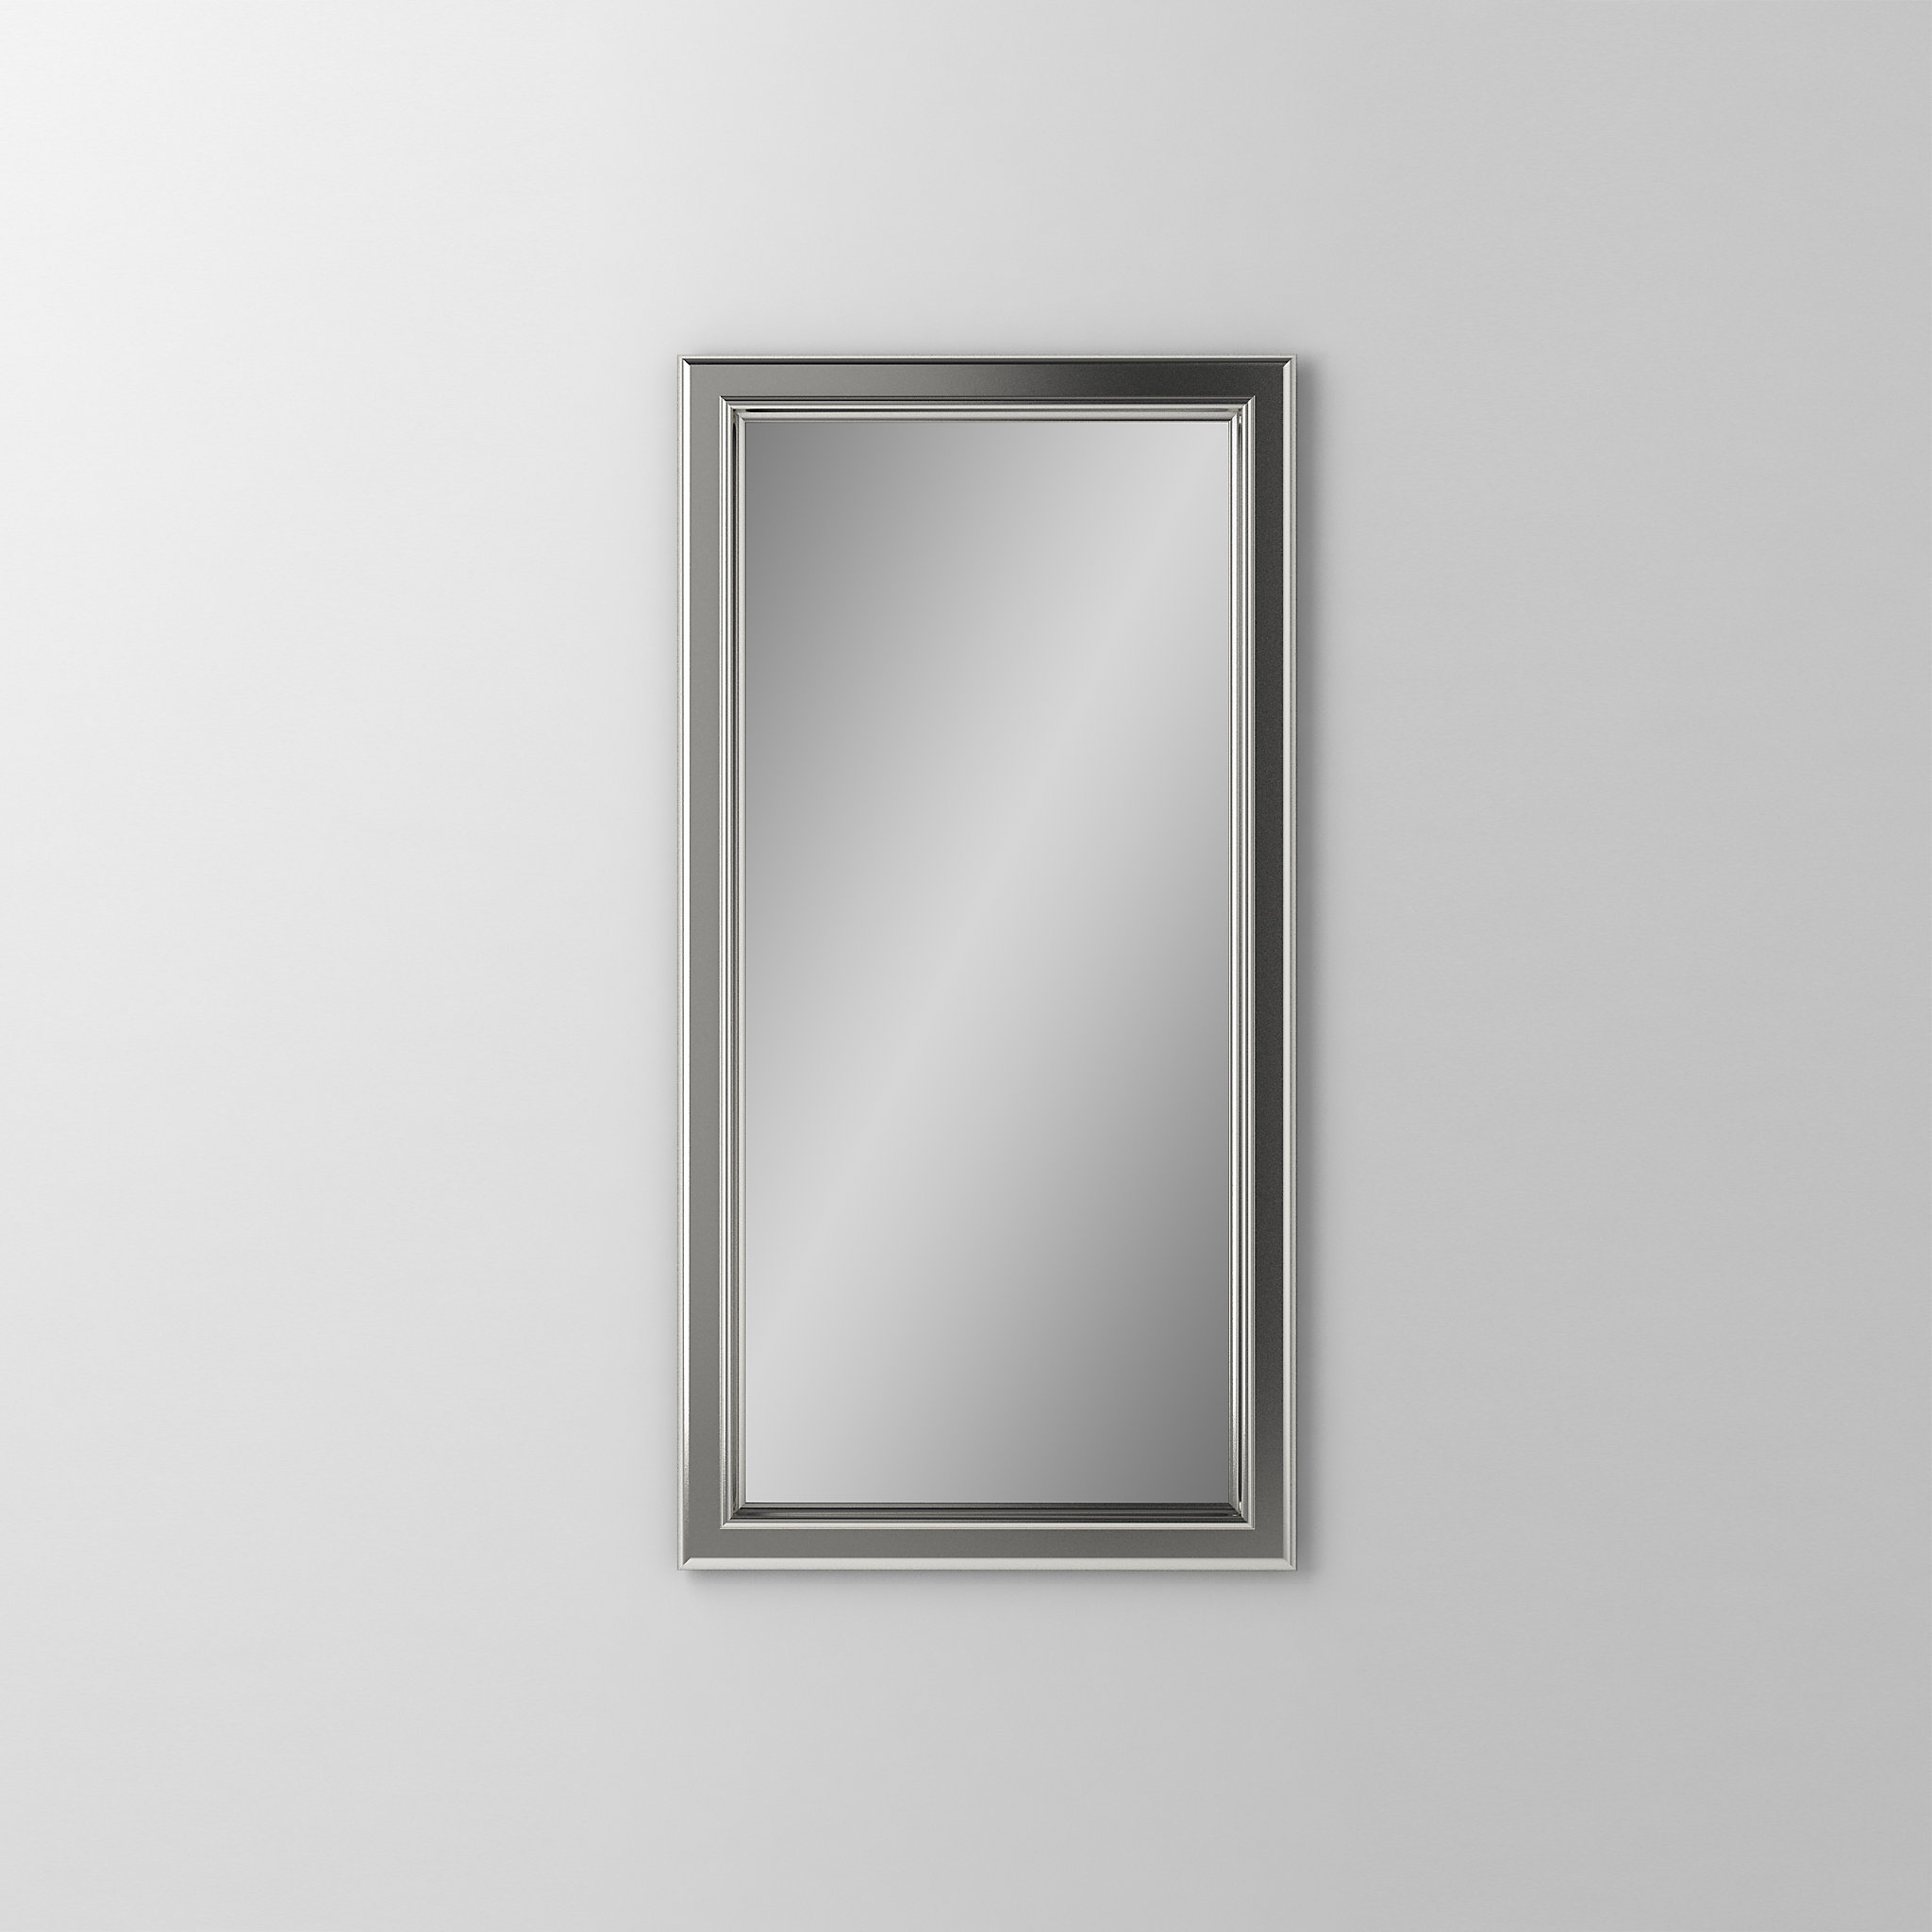 Robern DM1630BM70Main Line Mirror, 16" x 30" x 1-5/8", Bryn Mawr Frame, Satin Nickel